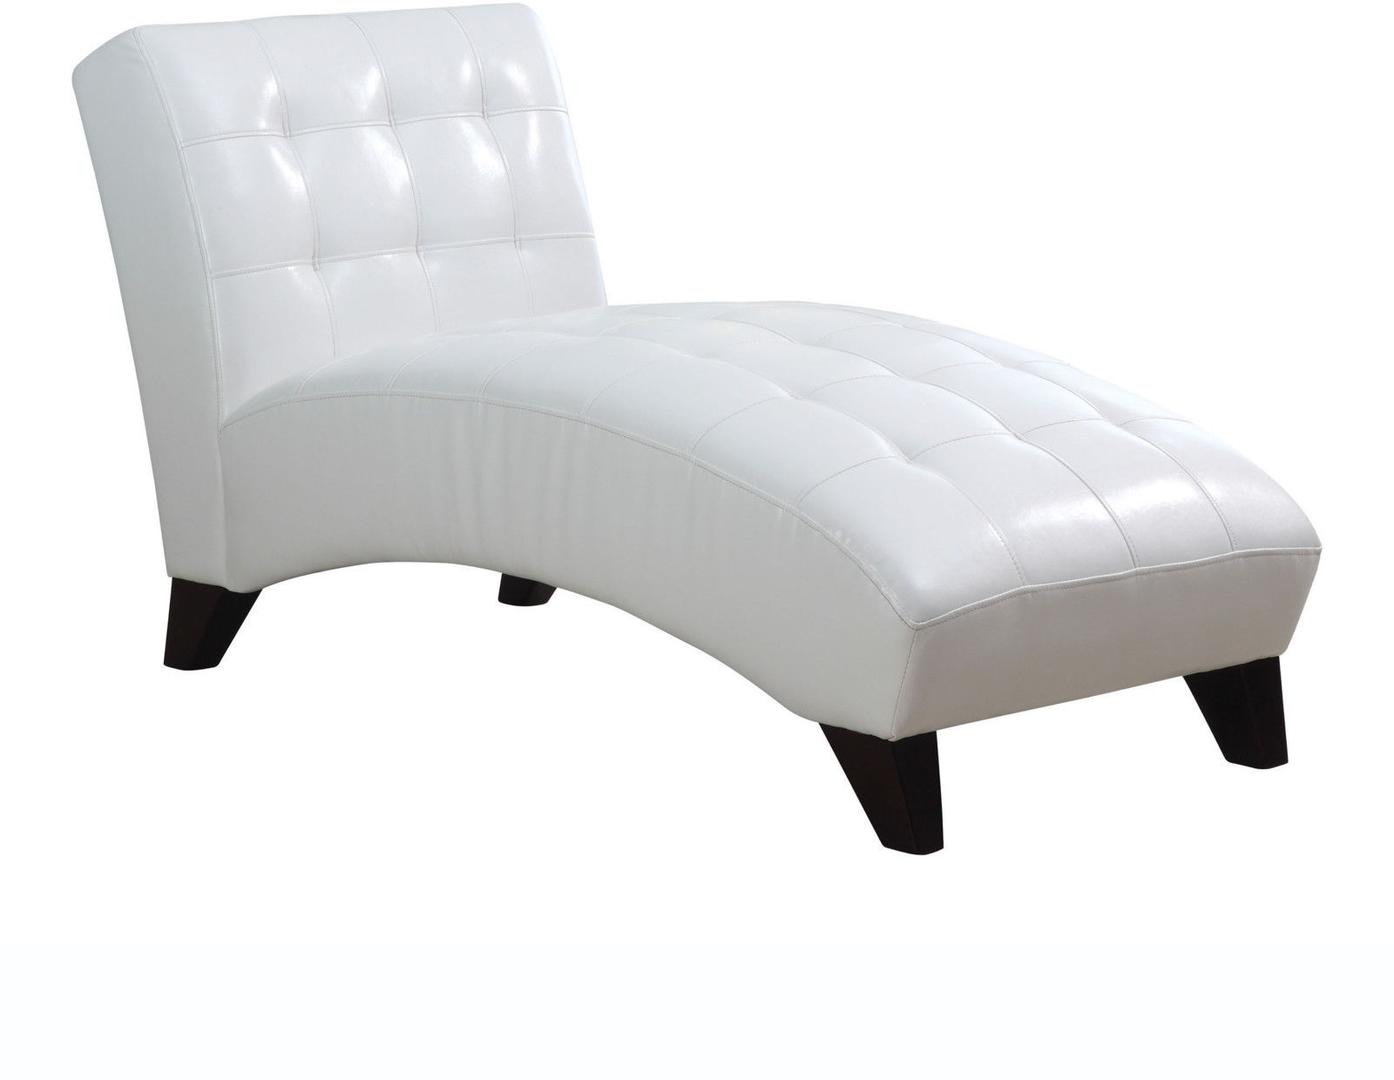 63" X 26" X 36" White Lounge Chaise